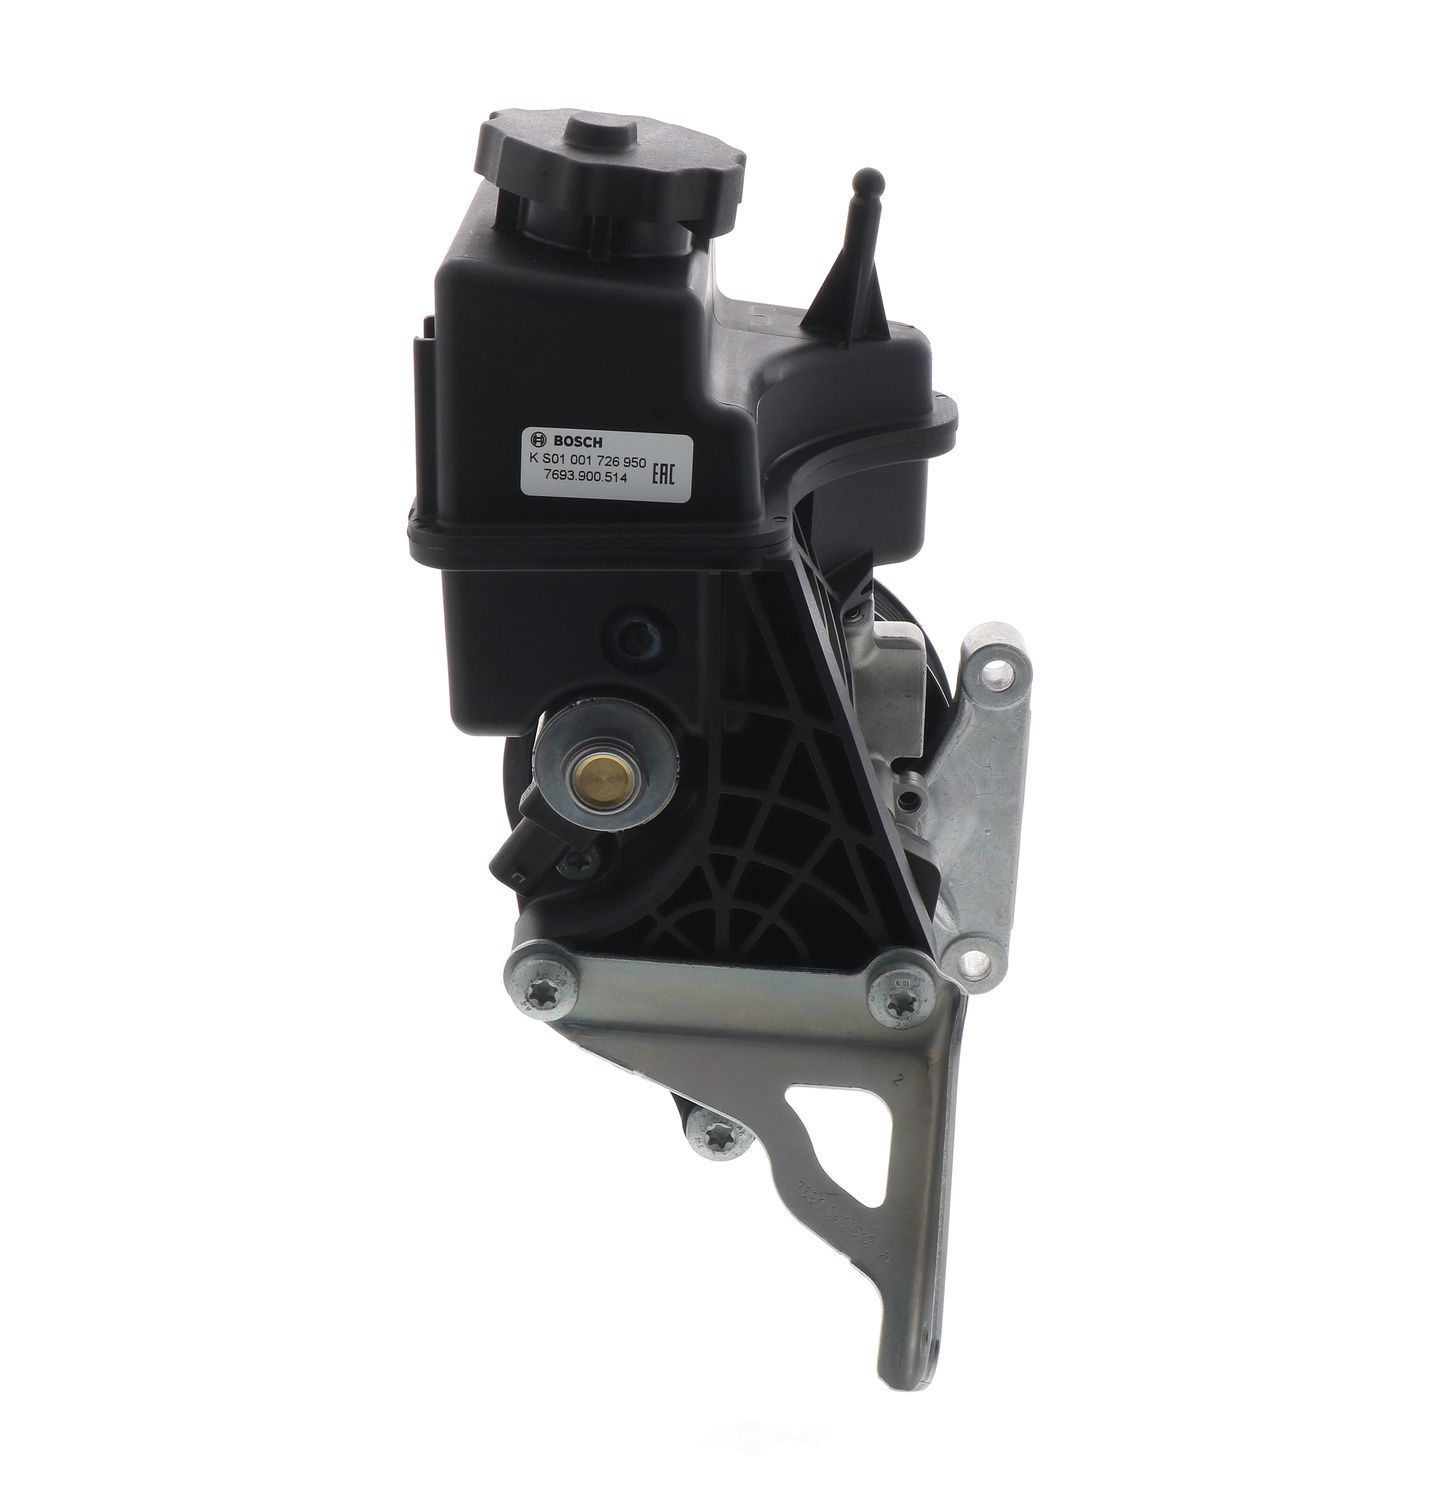 BOSCH - Reman Power Steering Pump - BOS KS01001726